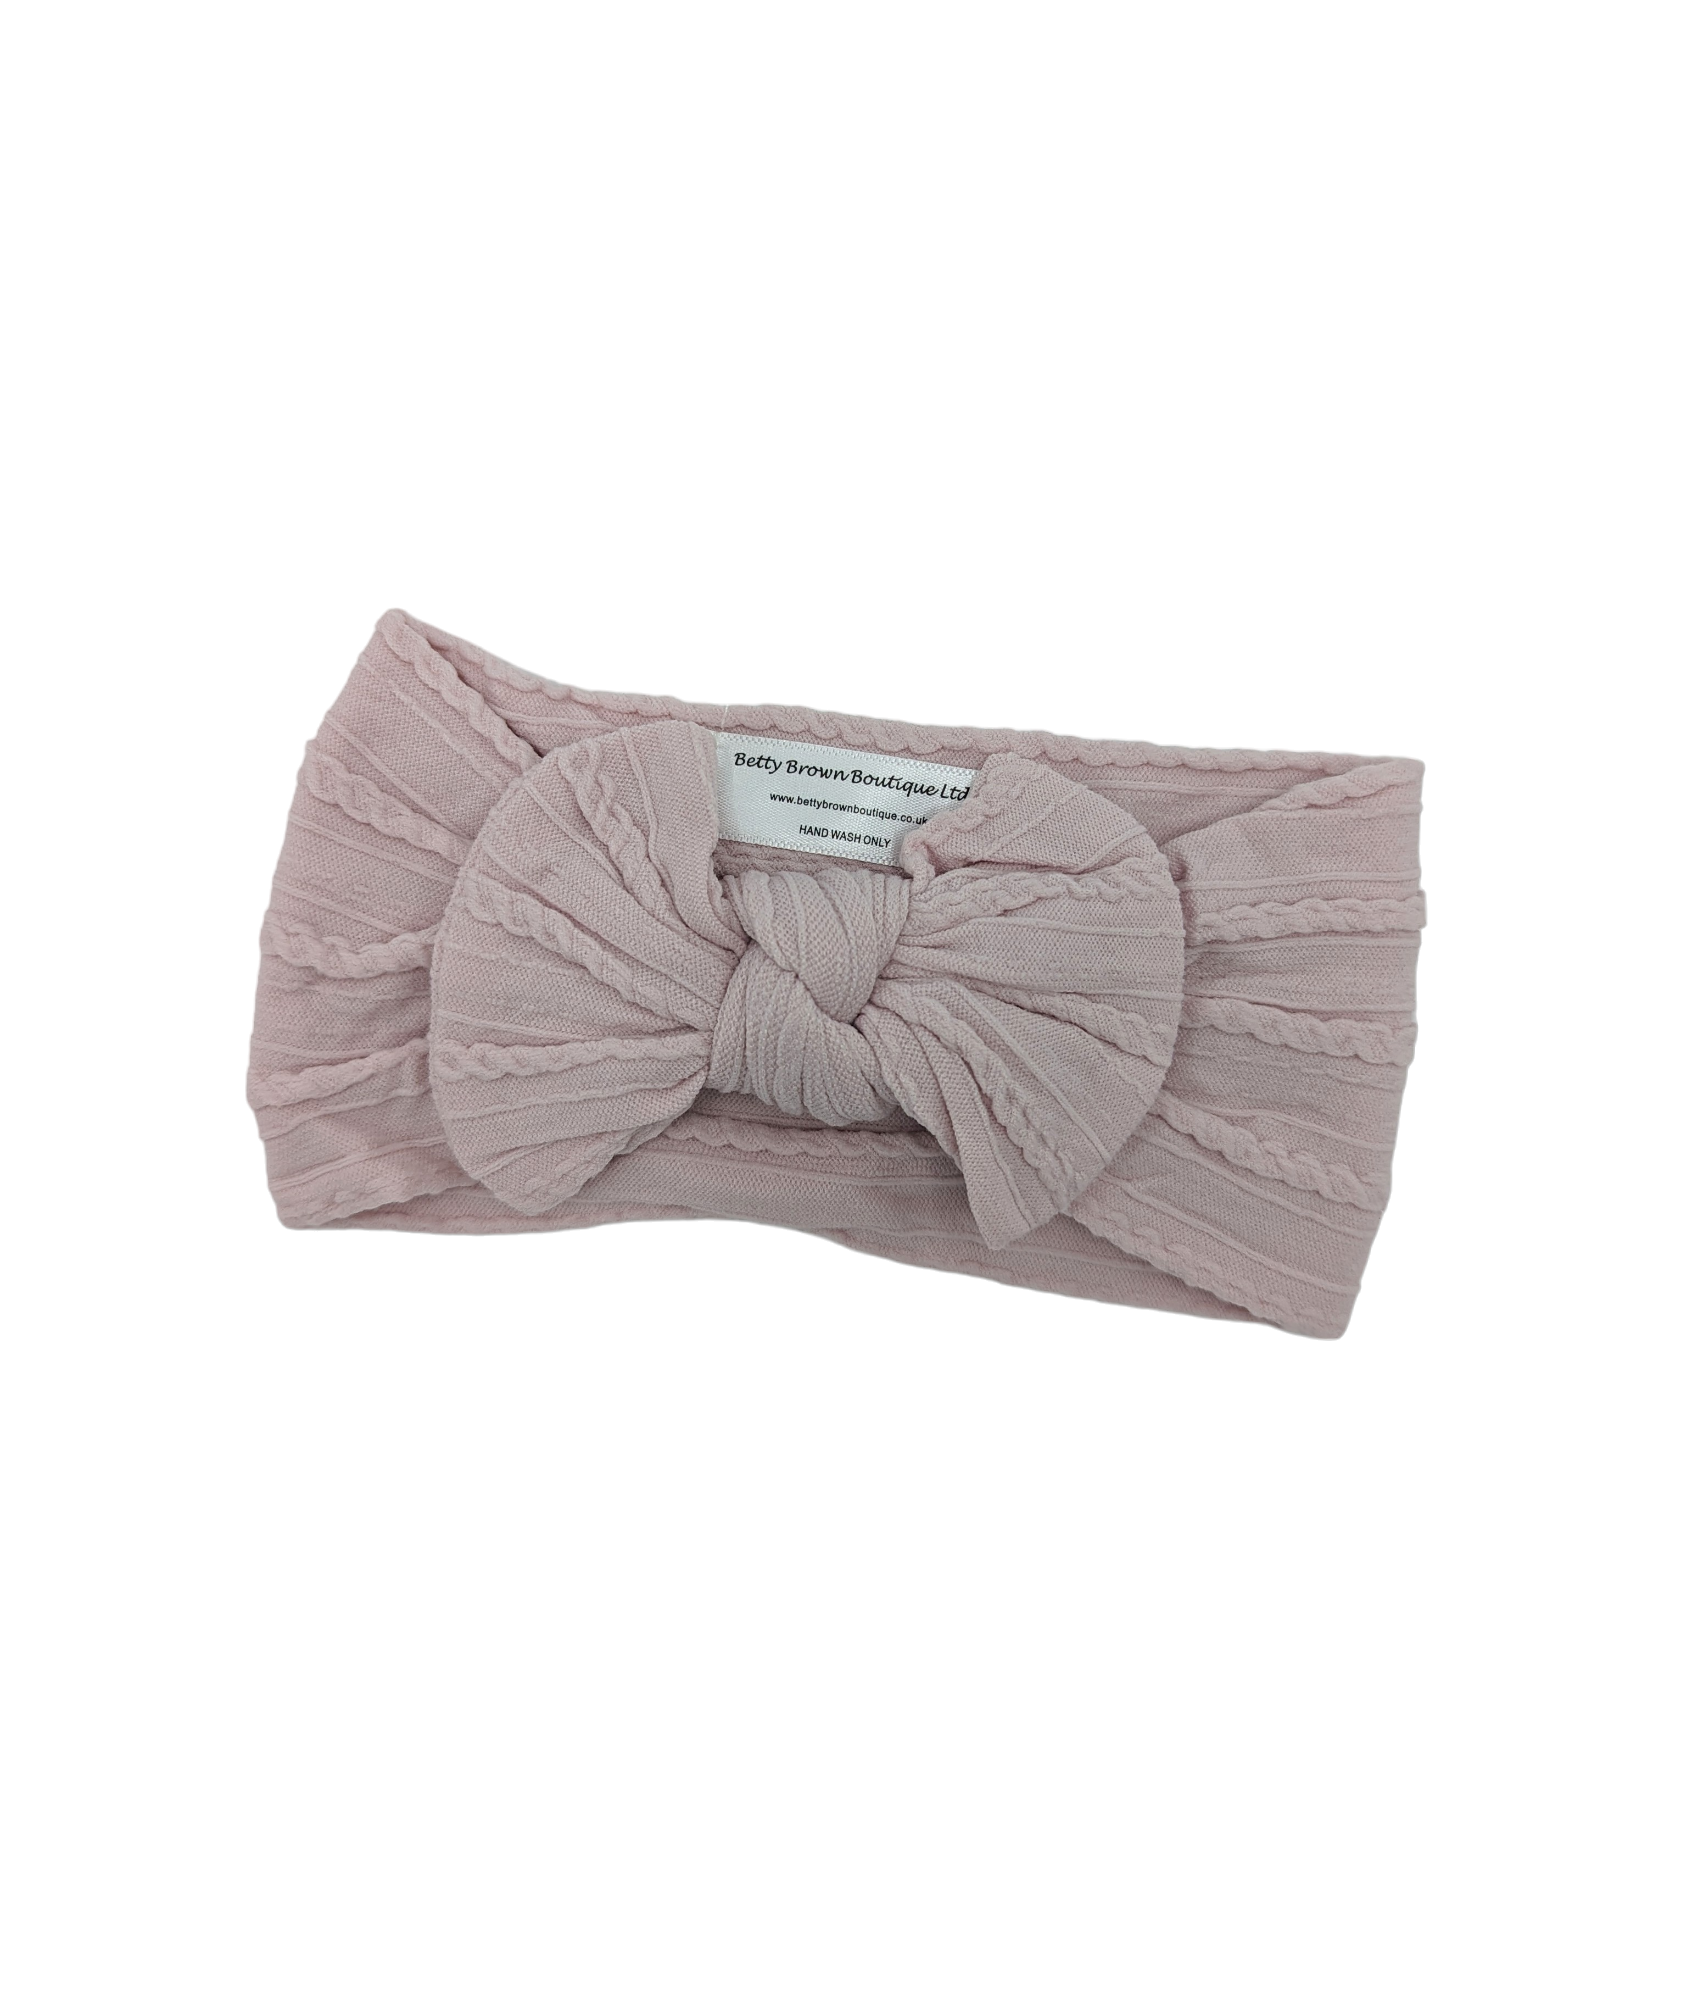 Pale mauve smaller bow cable knit Headwrap - Betty Brown Boutique Ltd